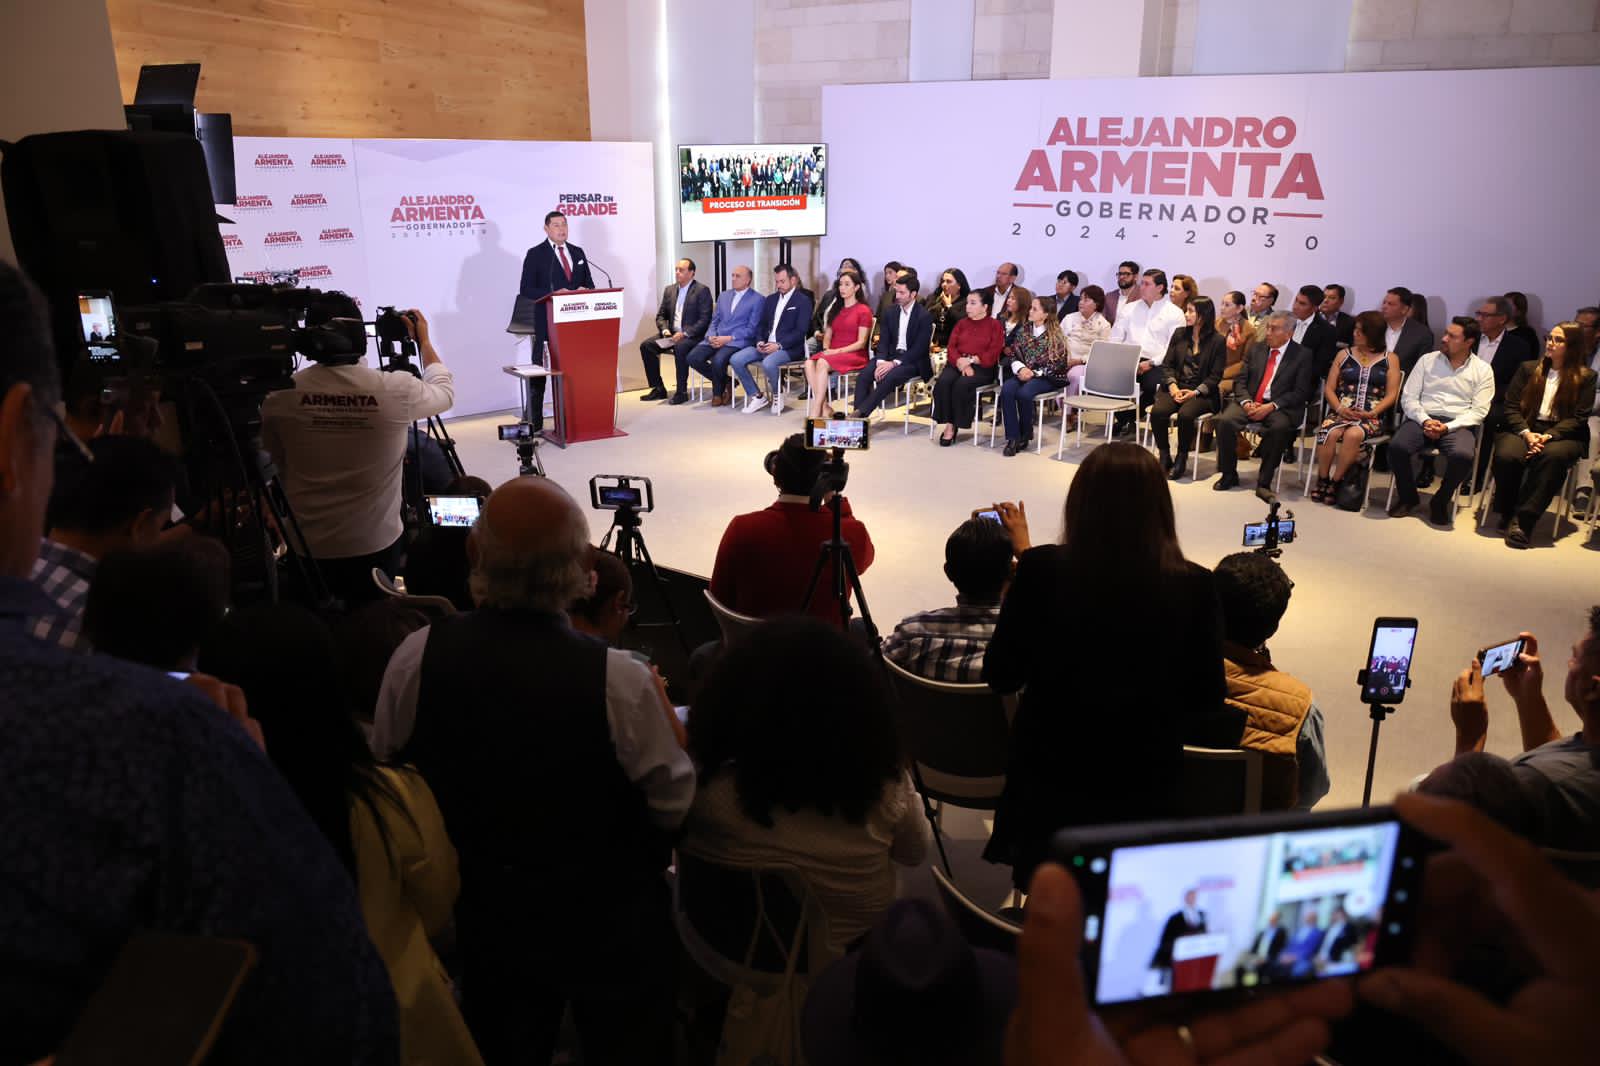 Se integran 3 comisiones y un comité técnico a la transición del Alejandro Armenta